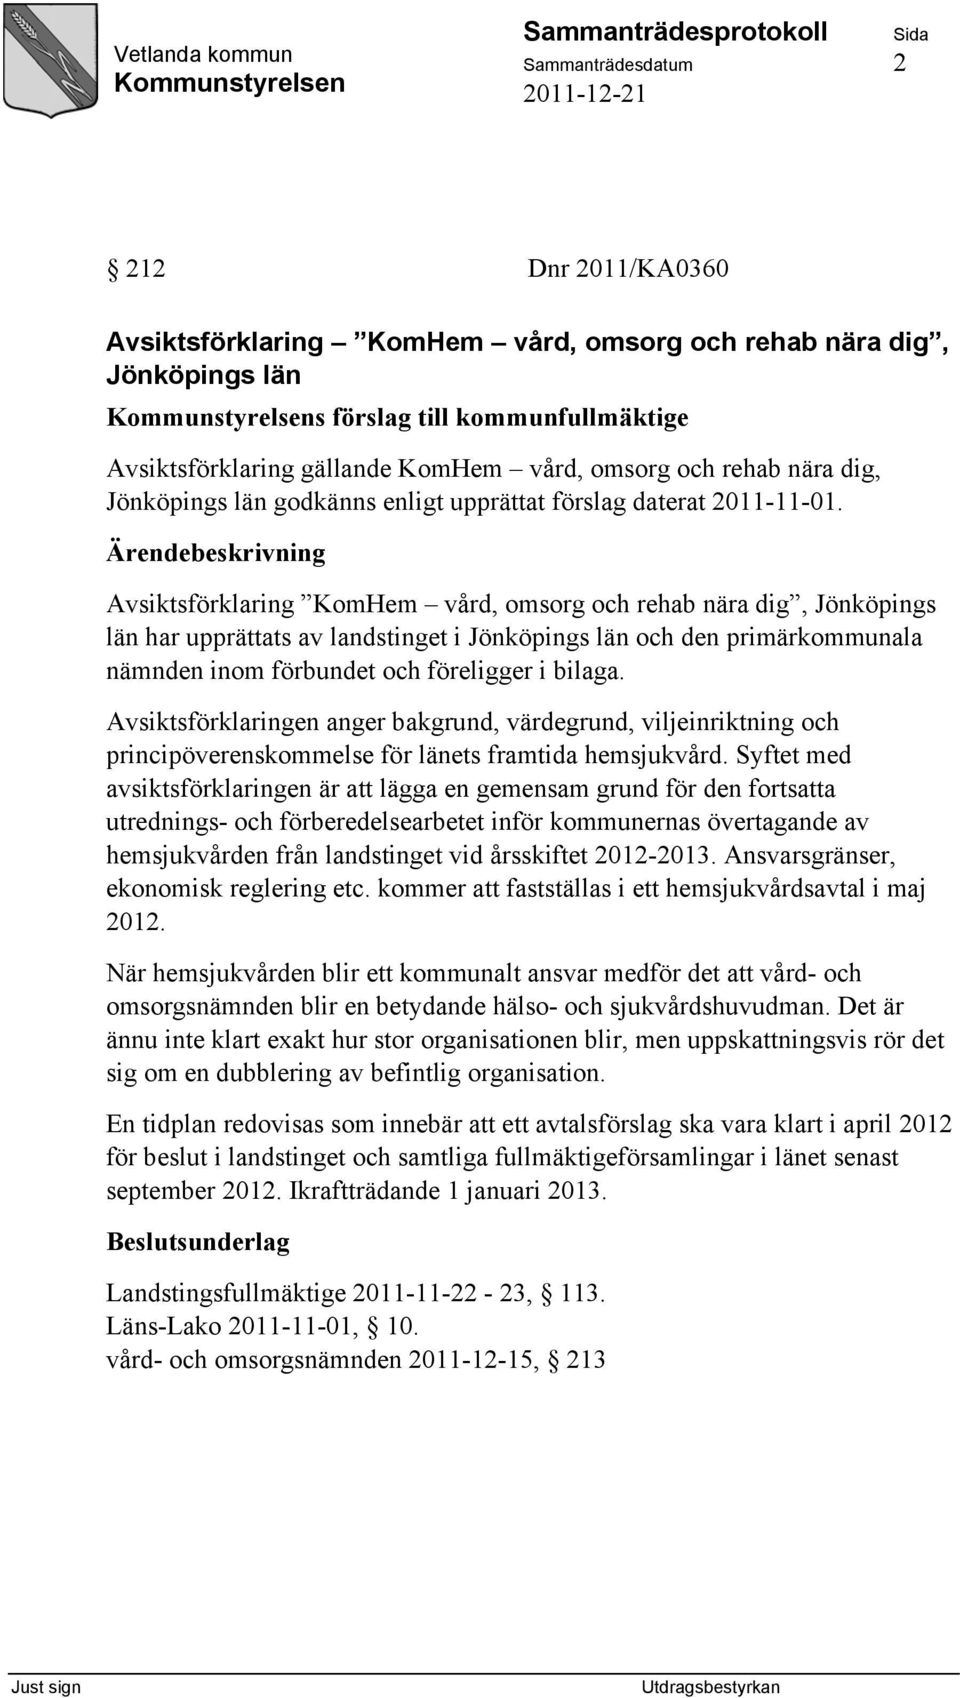 Avsiktsförklaring KomHem vård, omsorg och rehab nära dig, Jönköpings län har upprättats av landstinget i Jönköpings län och den primärkommunala nämnden inom förbundet och föreligger i bilaga.